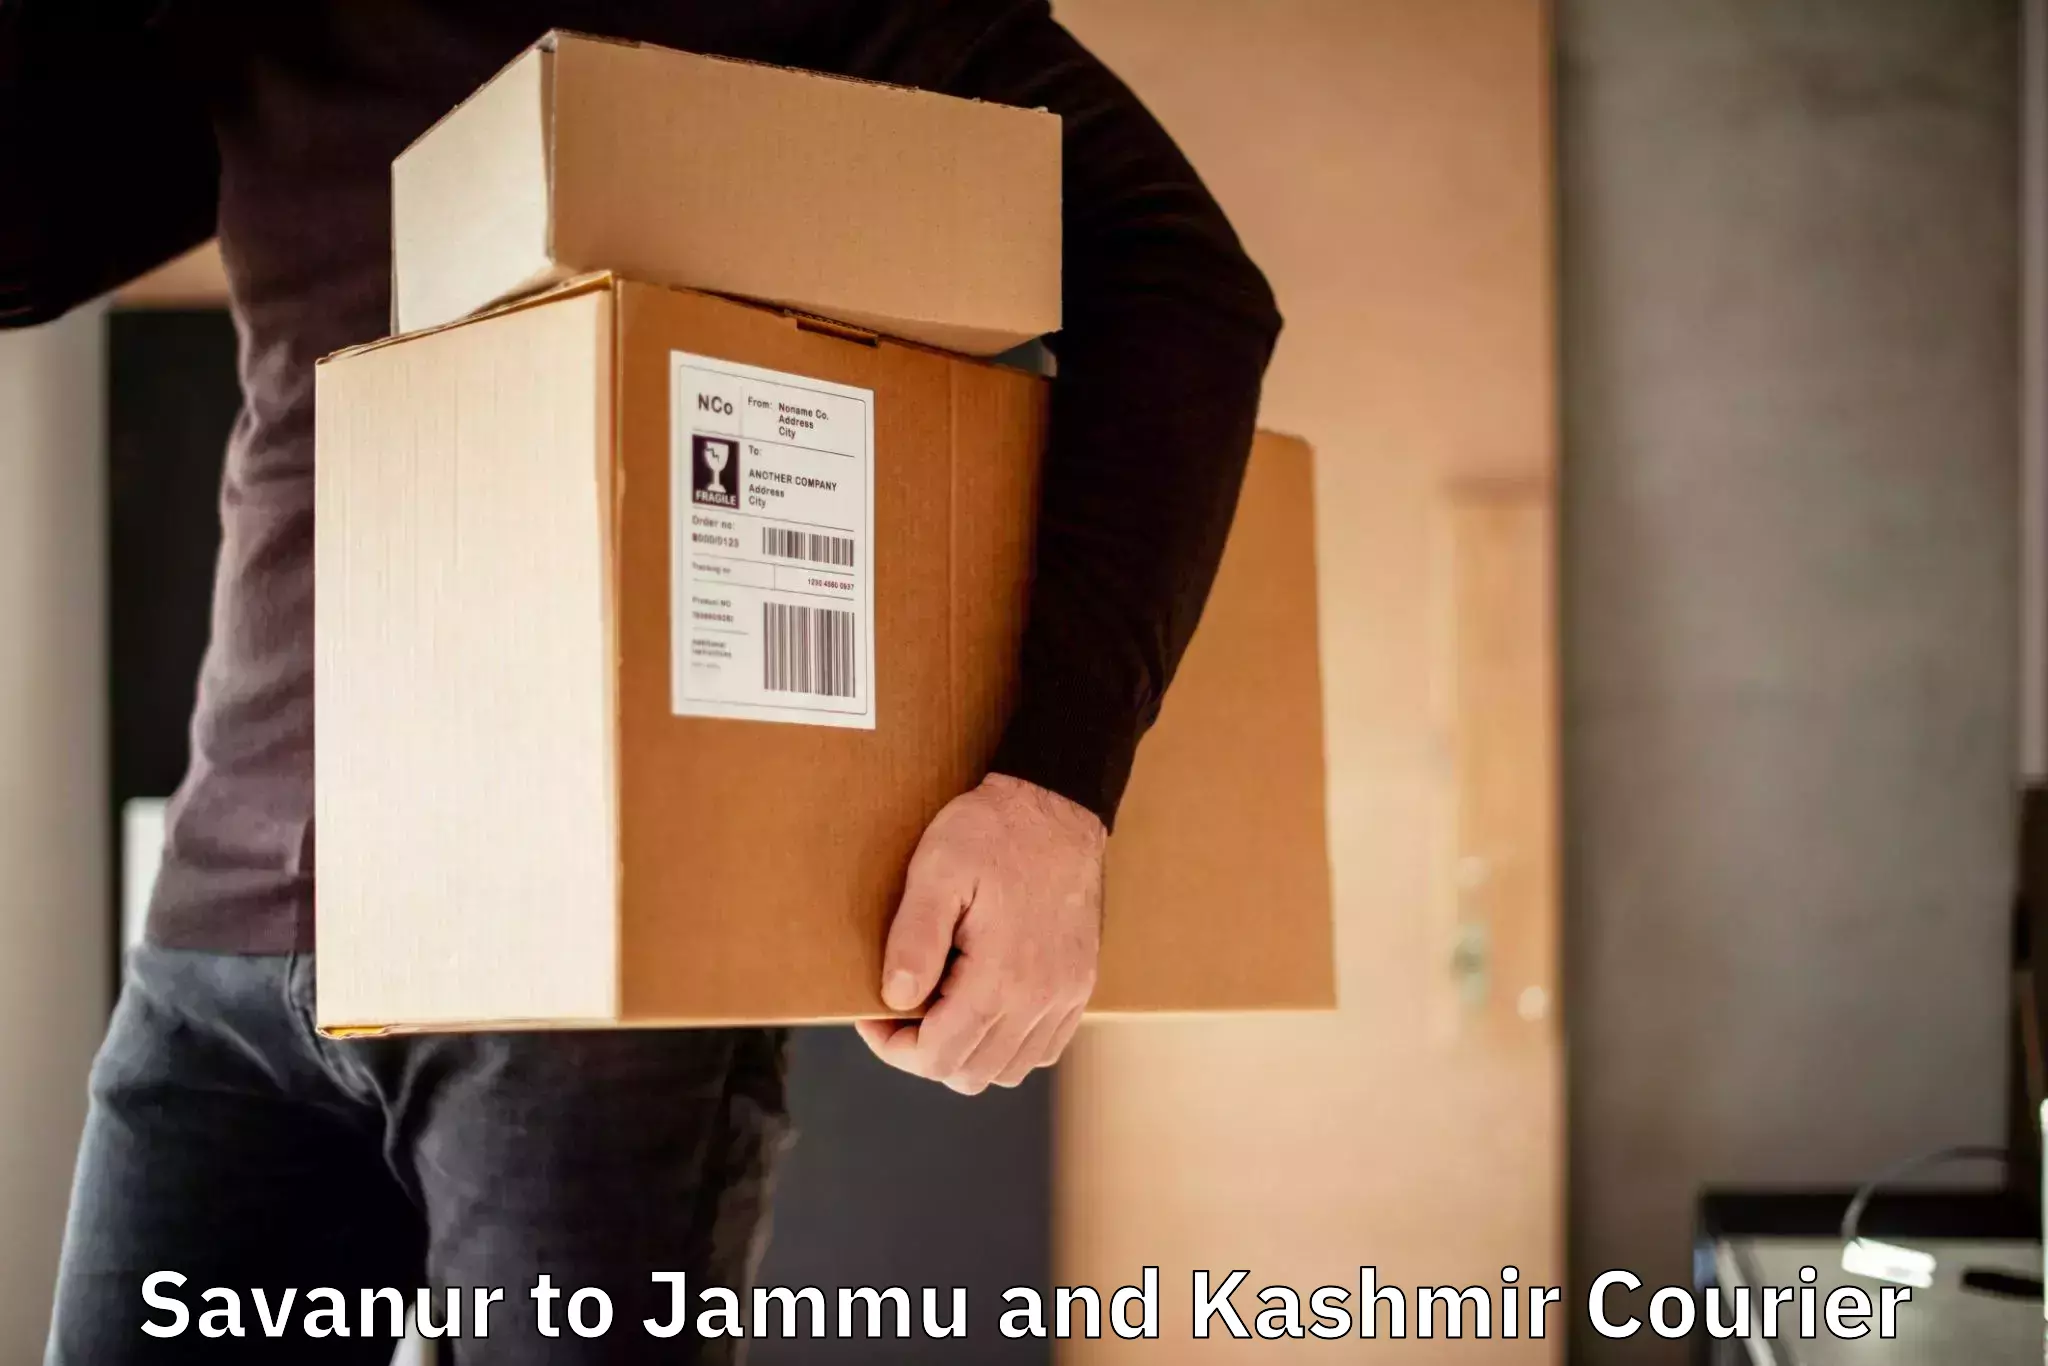 Express courier facilities Savanur to Jammu and Kashmir